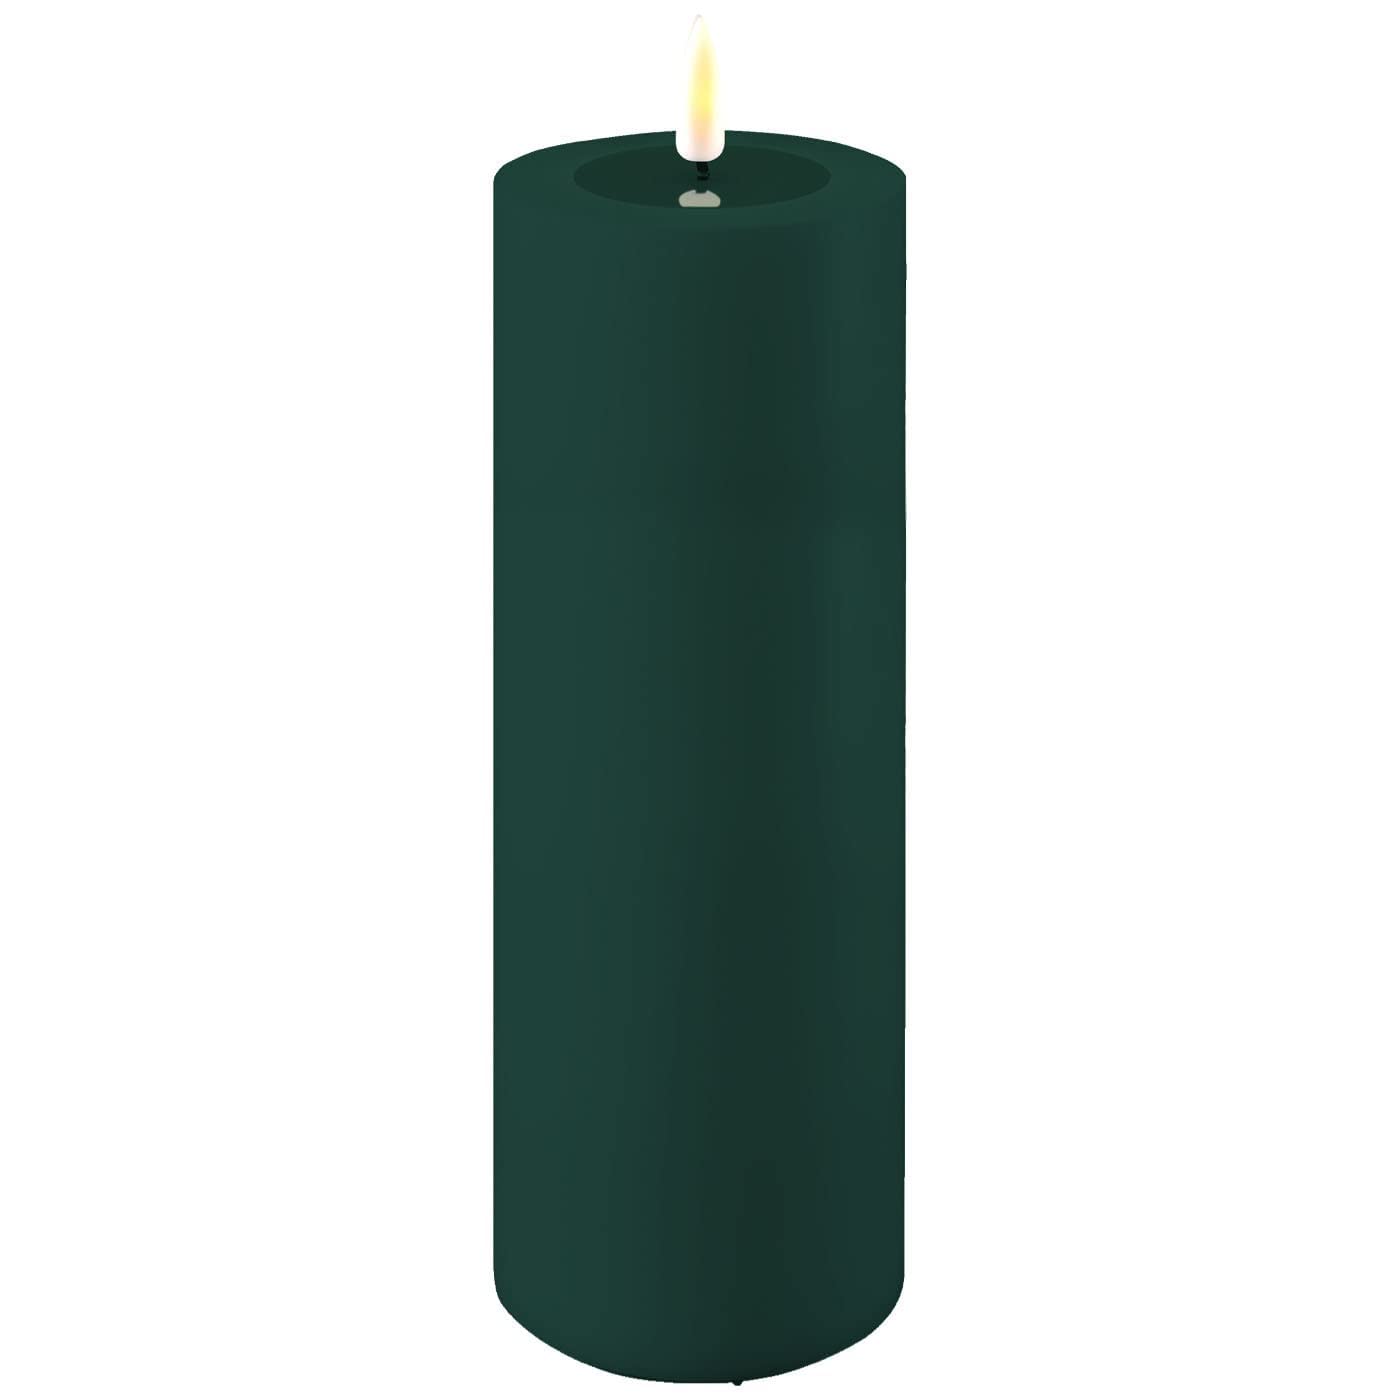 LED Kerze Deluxe Homeart, Outdoor LED Kerze (Kunststoff – Kein Echtwachs) mit realistischer Flamme, warmweißes Licht, Hitzebeständig für den Aussenbereich– (Dunkel Grün)